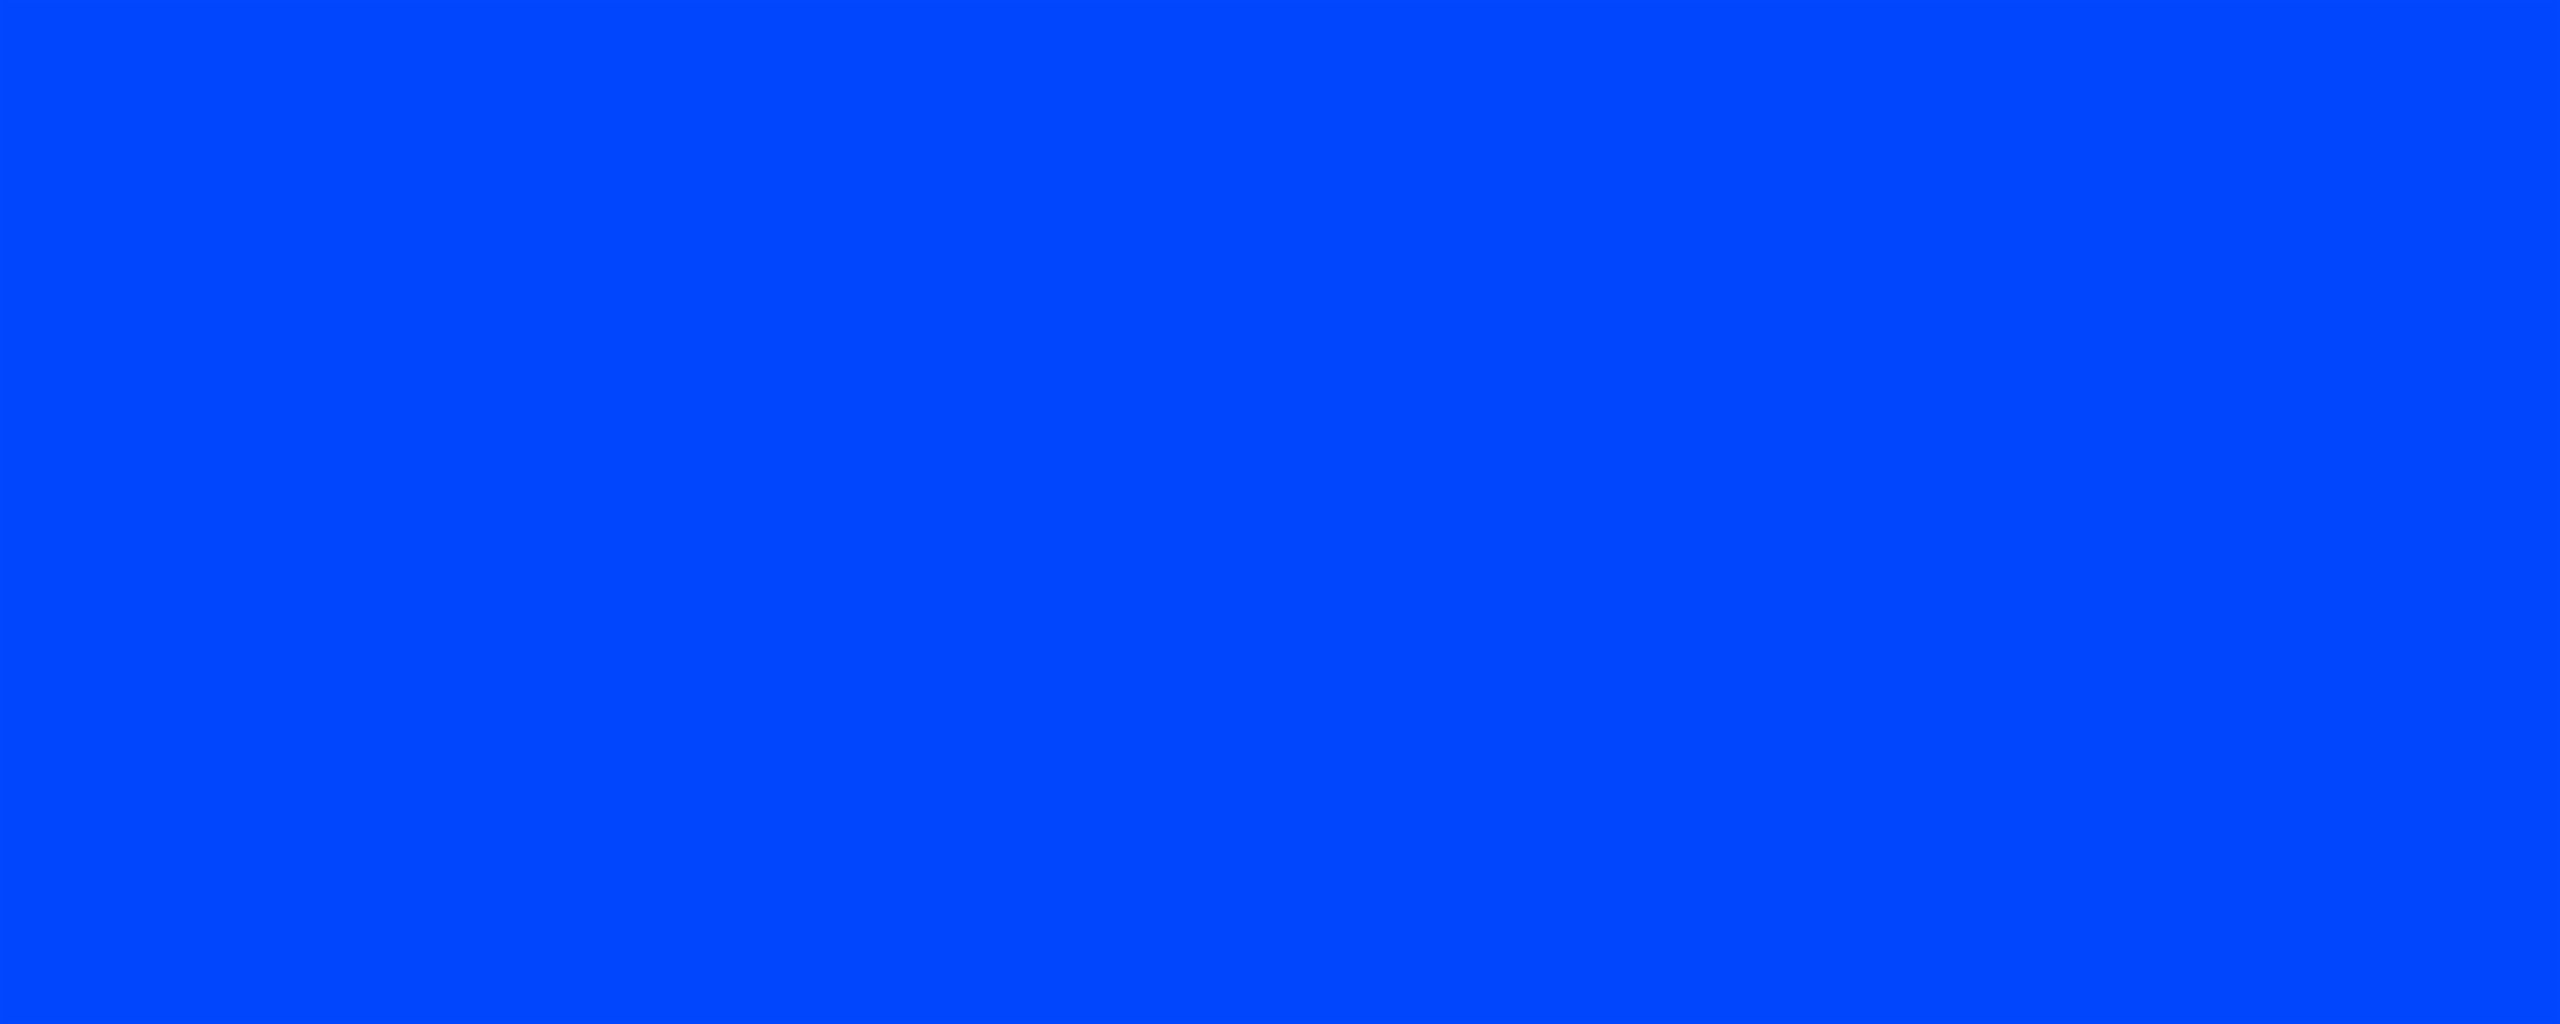 Plain Color Wallpaper Blue Color Background 2560x1024 wallpaper